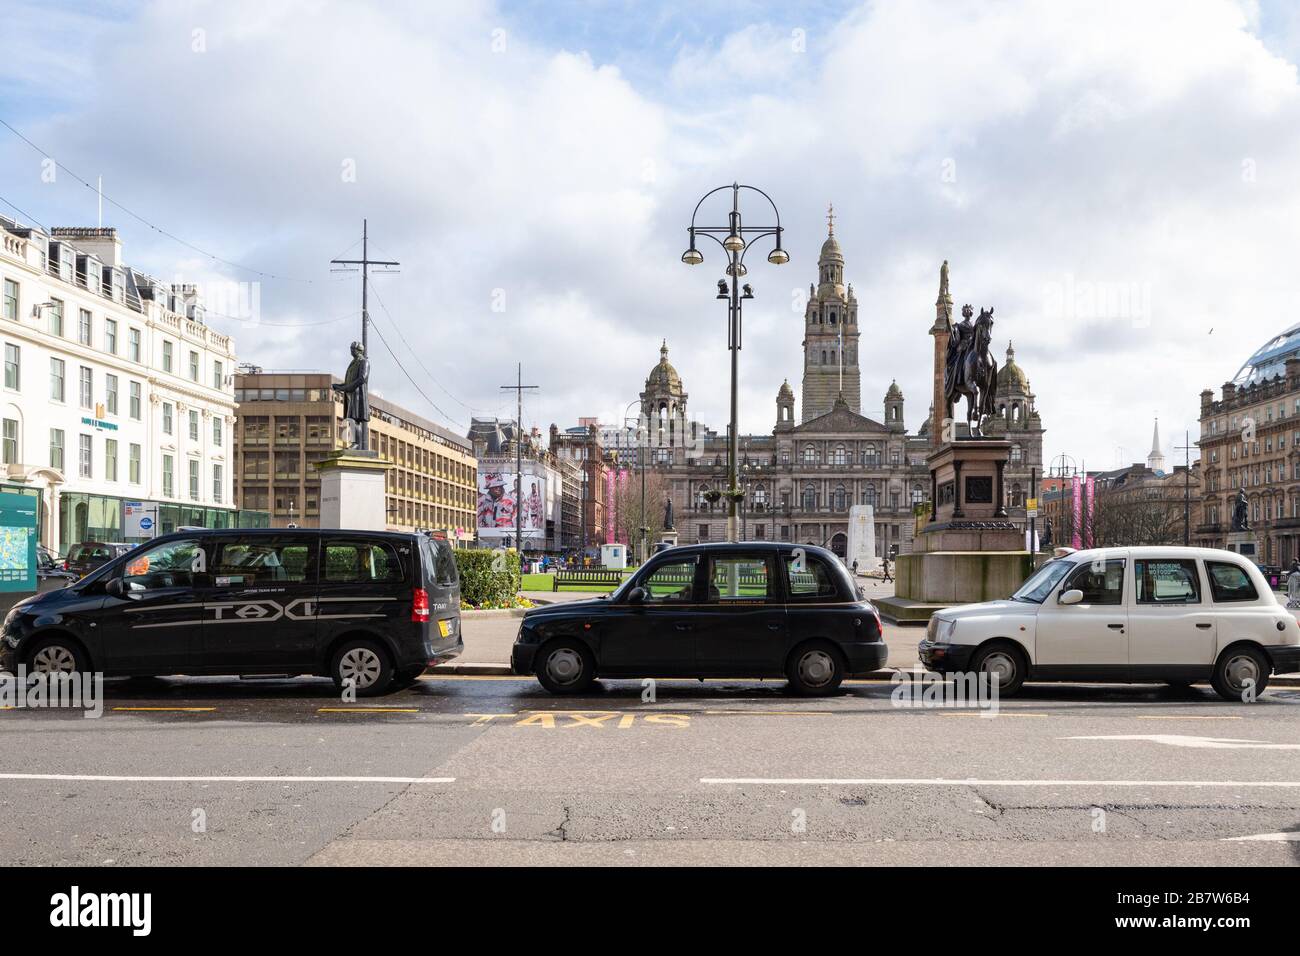 Glasgow, Scozia, Regno Unito. 18 marzo 2020. Code di taxi senza clienti nel centro di Glasgow in mezzo al focolaio di Coronavirus come la maggior parte delle persone sono state via come chiesto credito: Kay Roxby/Alamy Live News Foto Stock